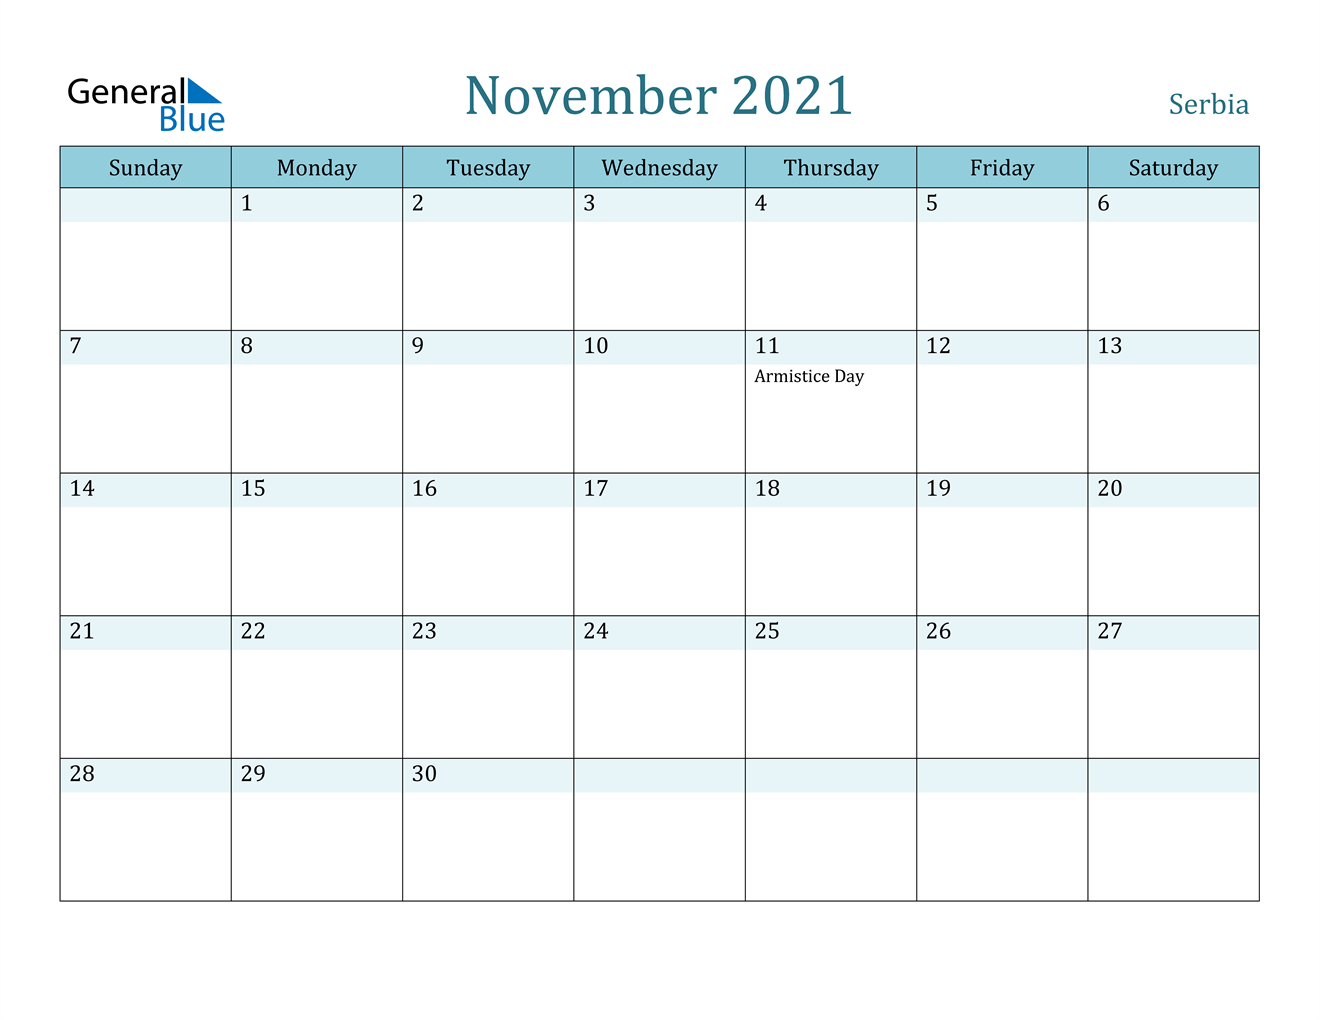 November 2021 Calendar - Serbia November 2021 Calendar With Festivals